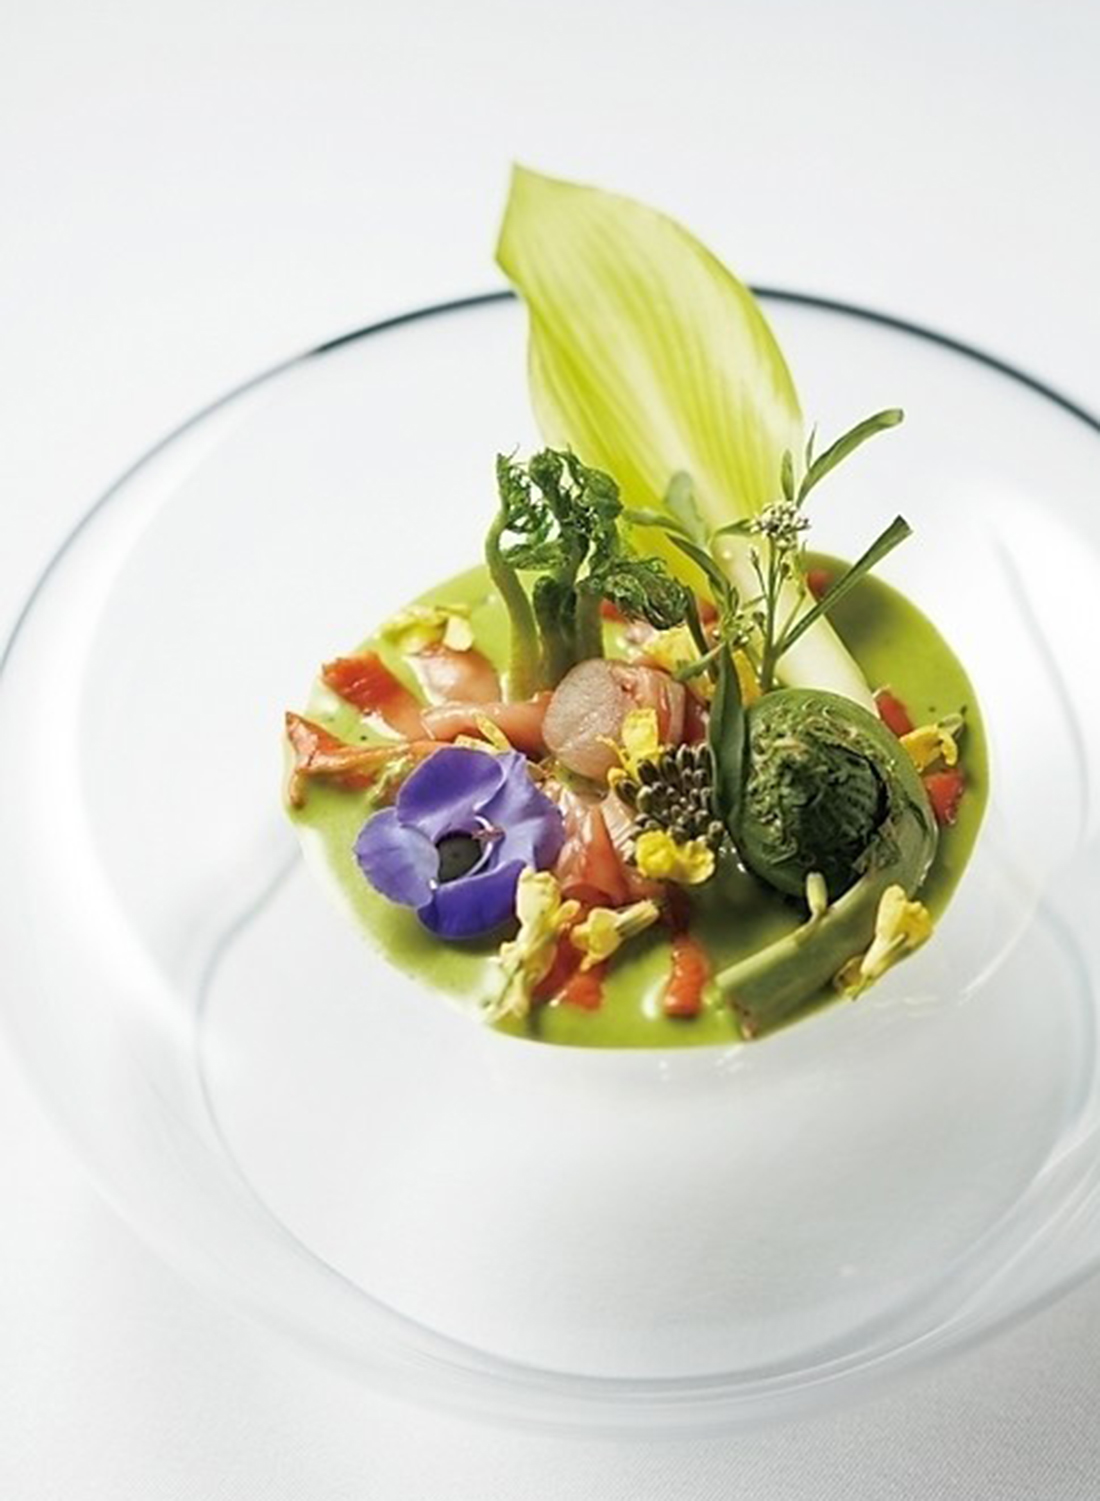 赤貝、山菜、紫の 花などで早春の芽吹きを表現したひと皿。